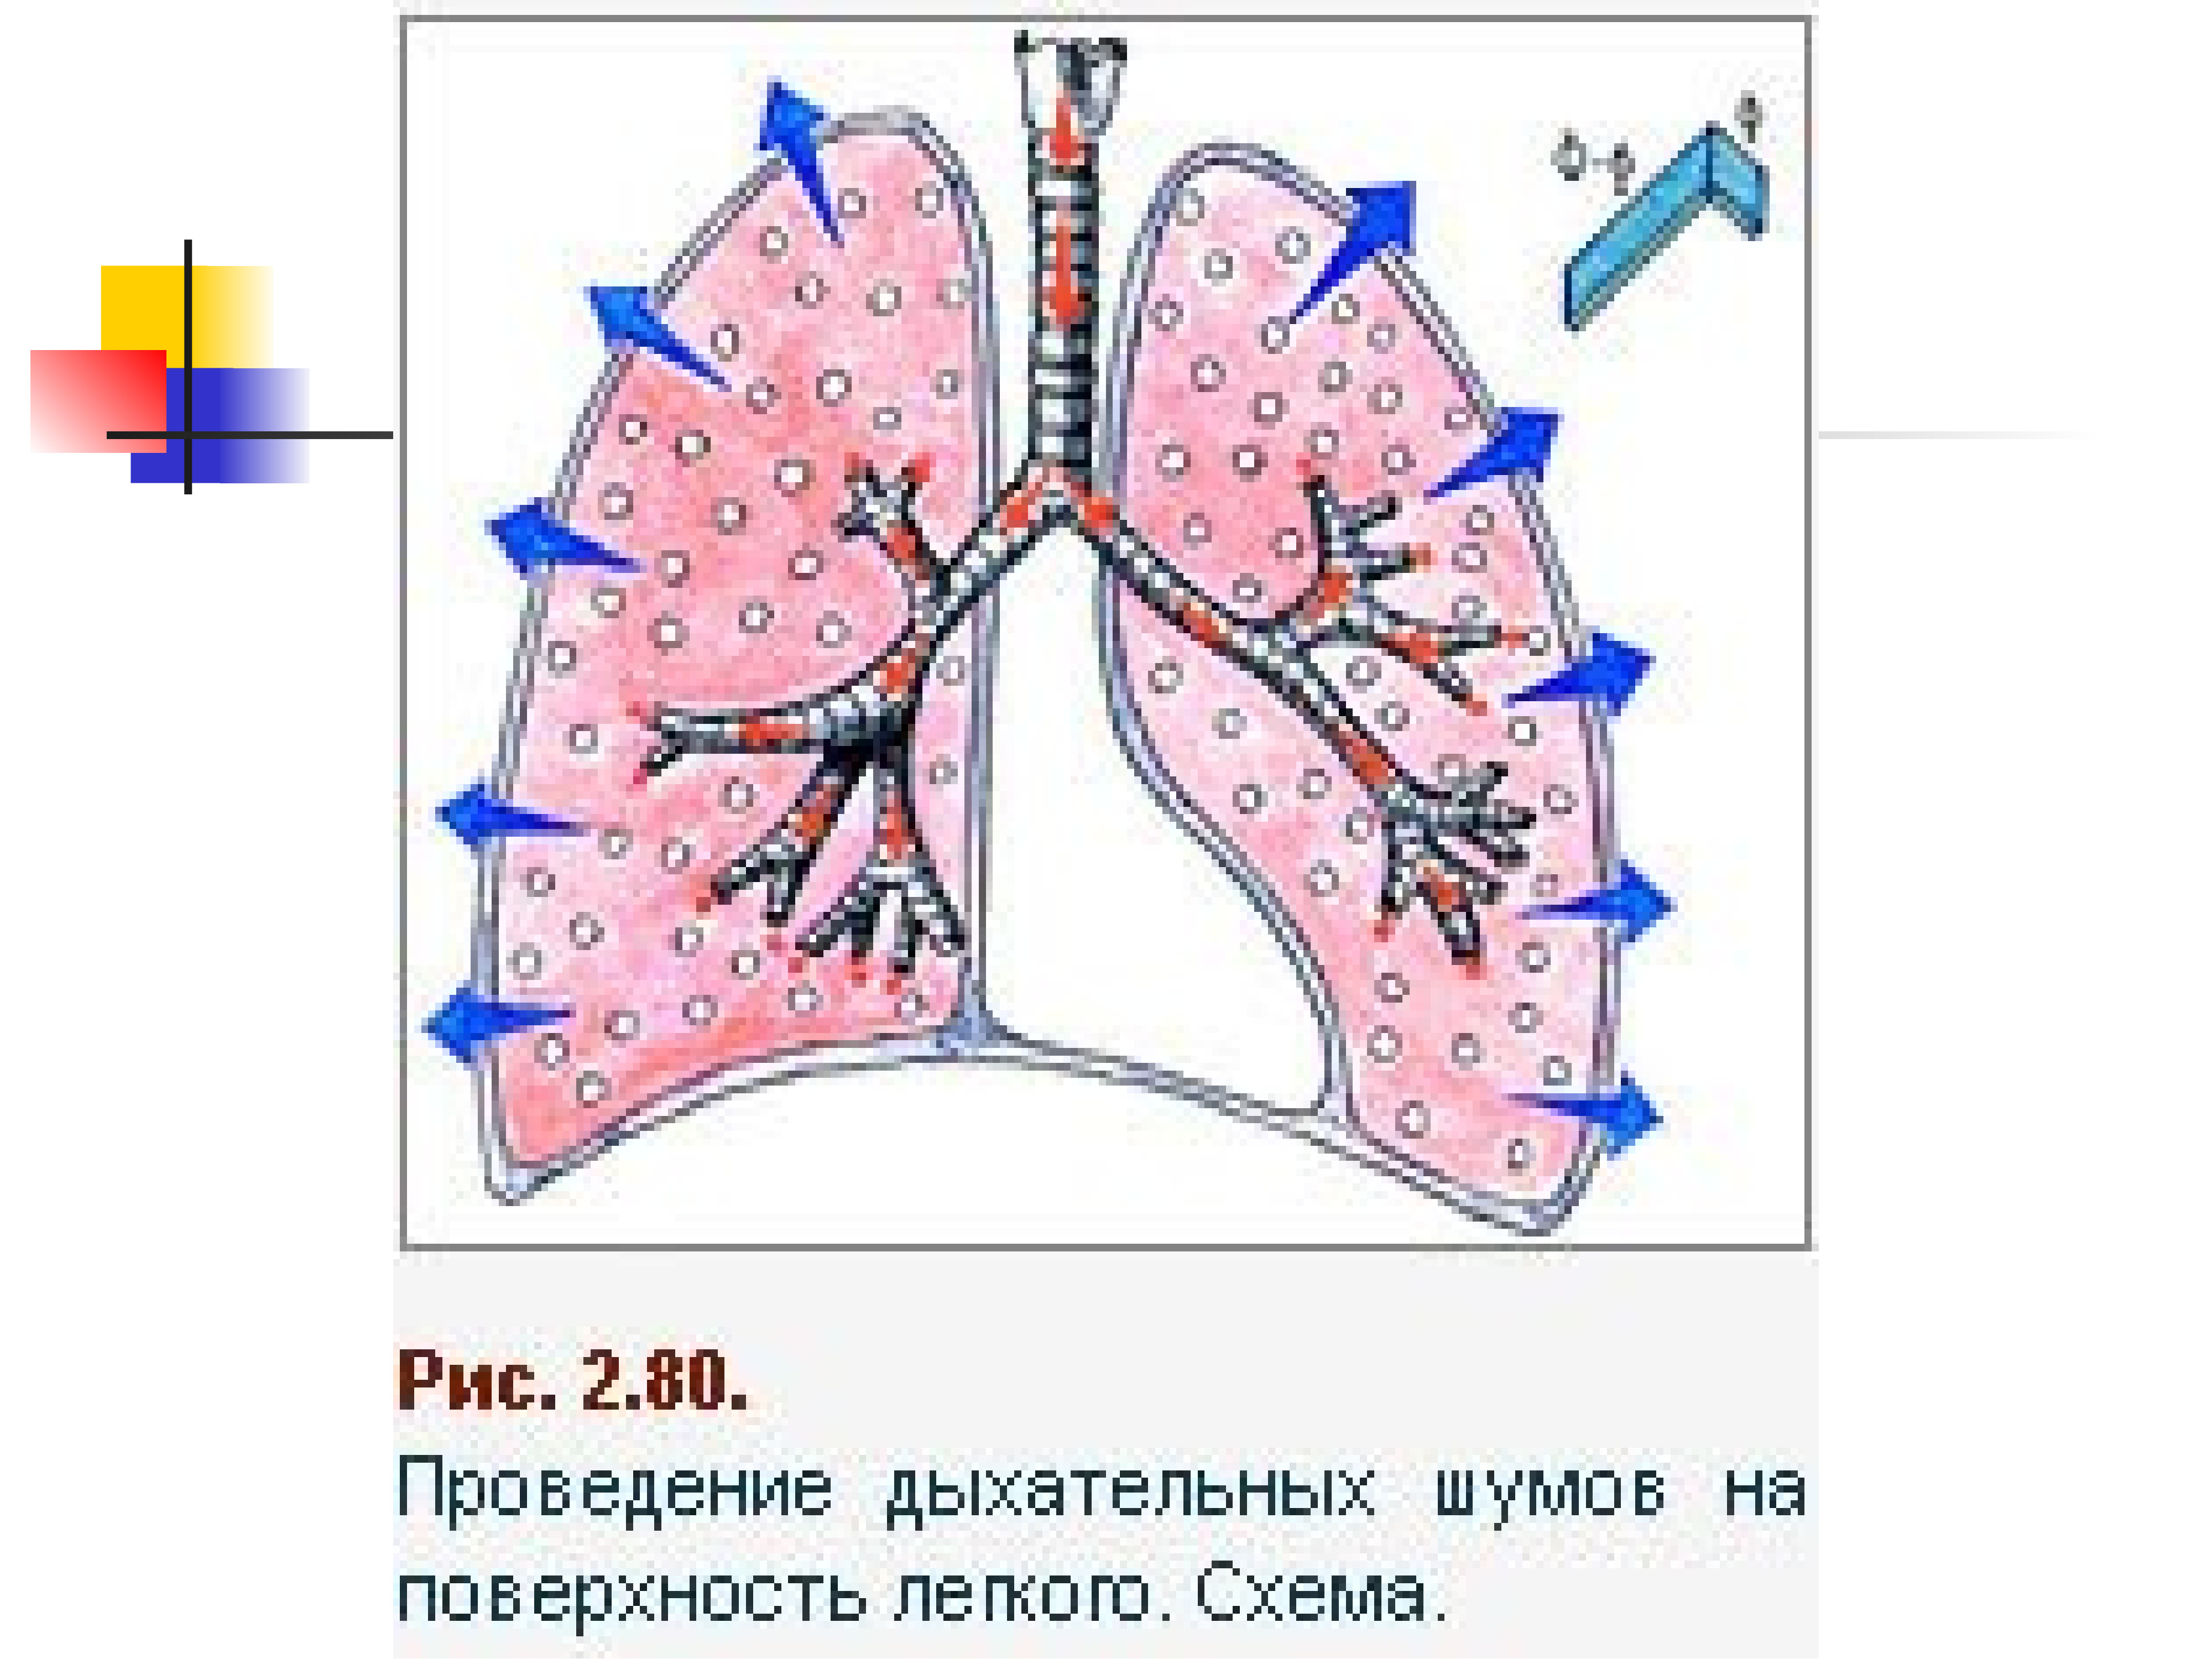 Исследование дыхательной системы. Методы исследования дыхательной системы. Поверхности легкого схема. Бронхиальное дыхание. Поверхность легких образована